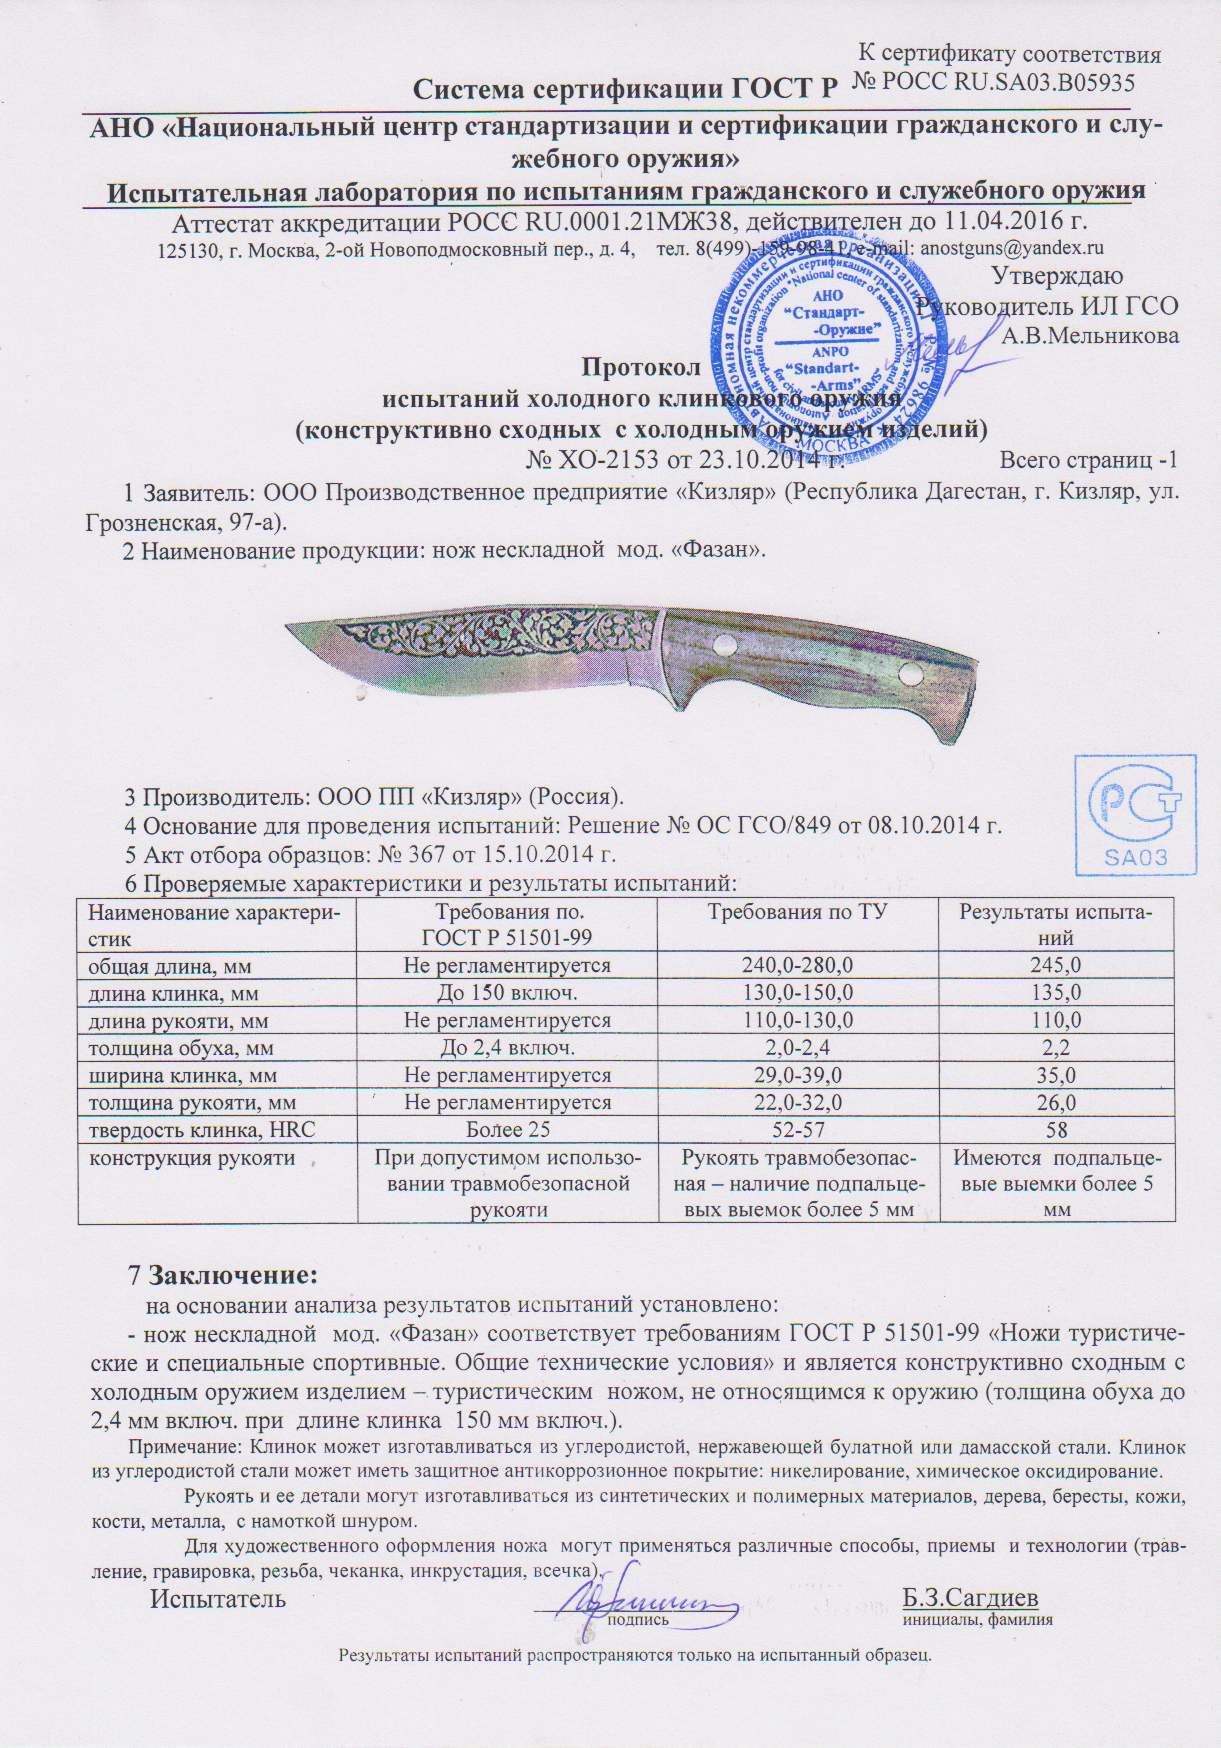 Нож Кизляр "Фазан" артикул 021101 Z90